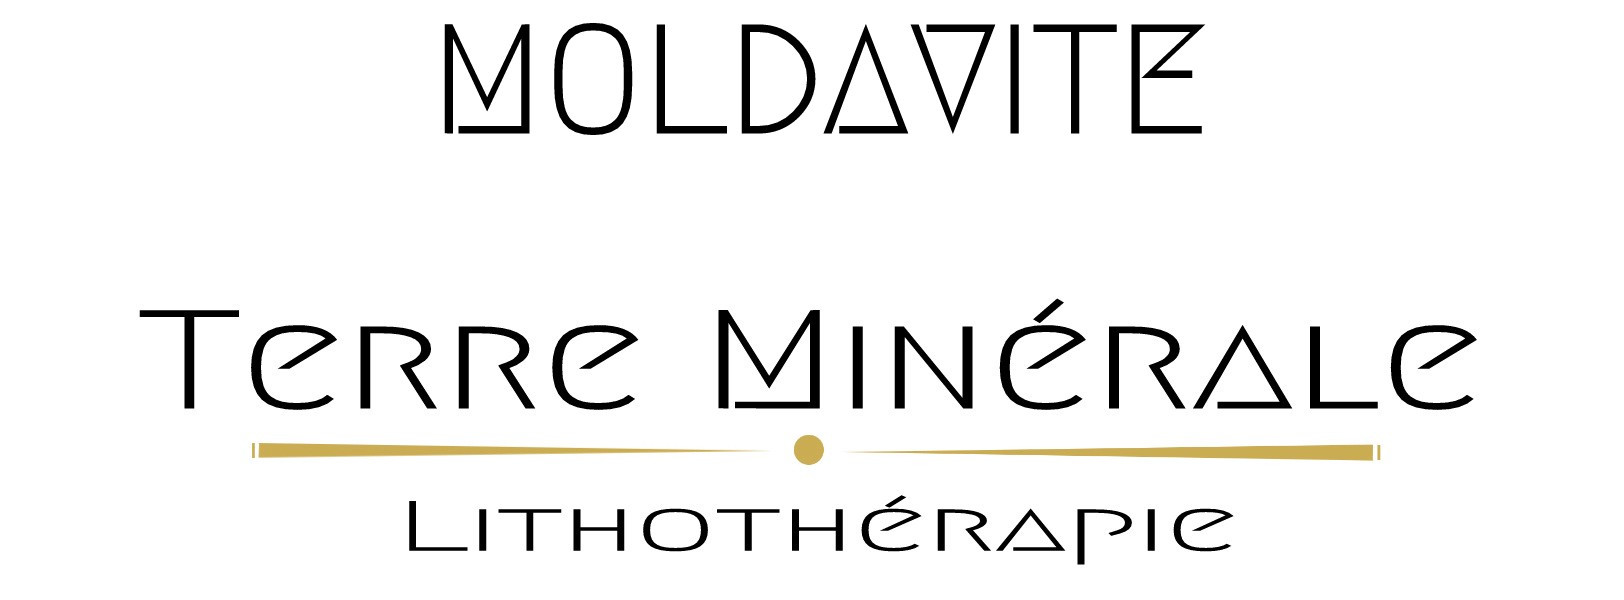 MOLDAVITE